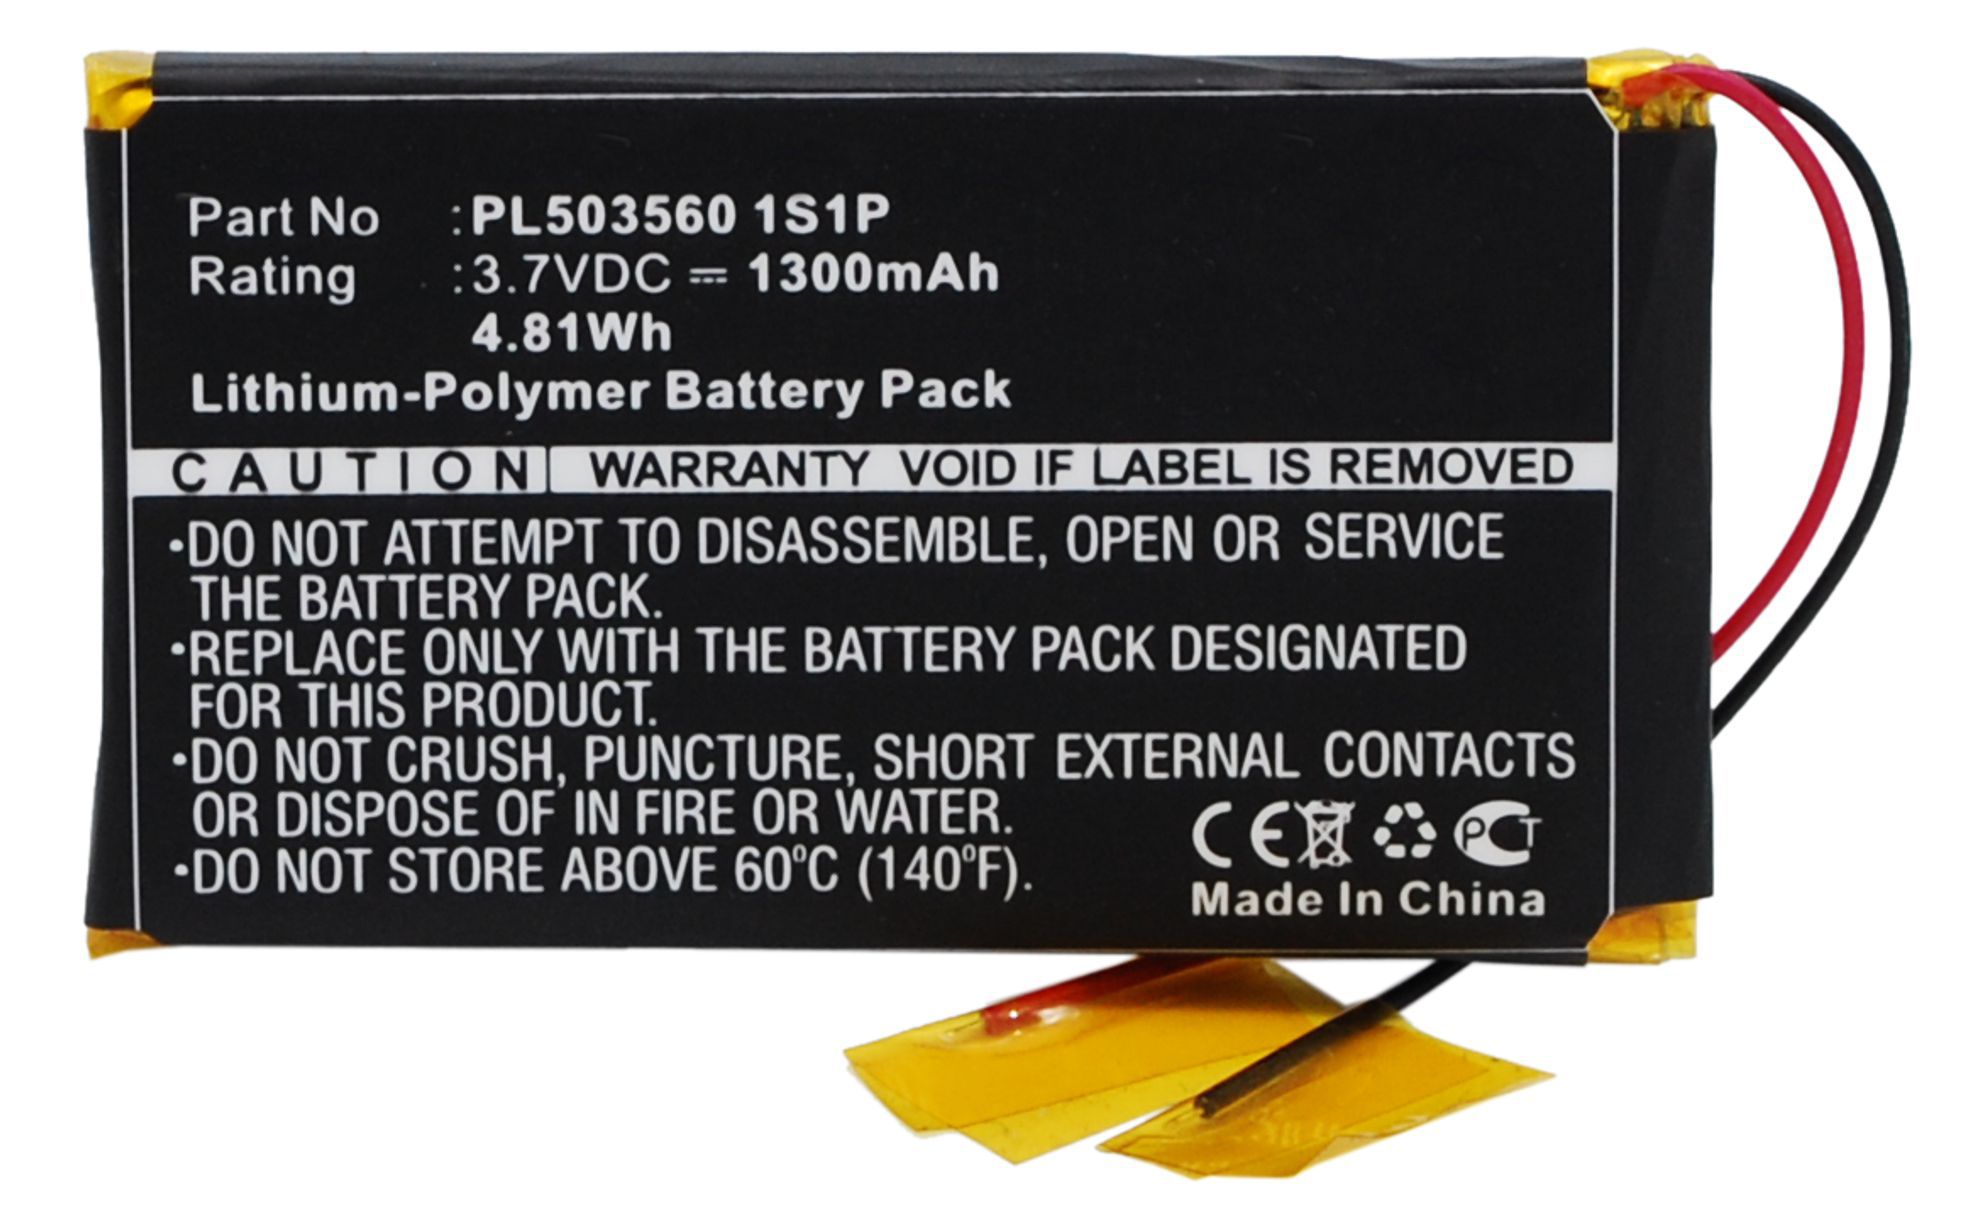 Batteries for FiioAmplifier